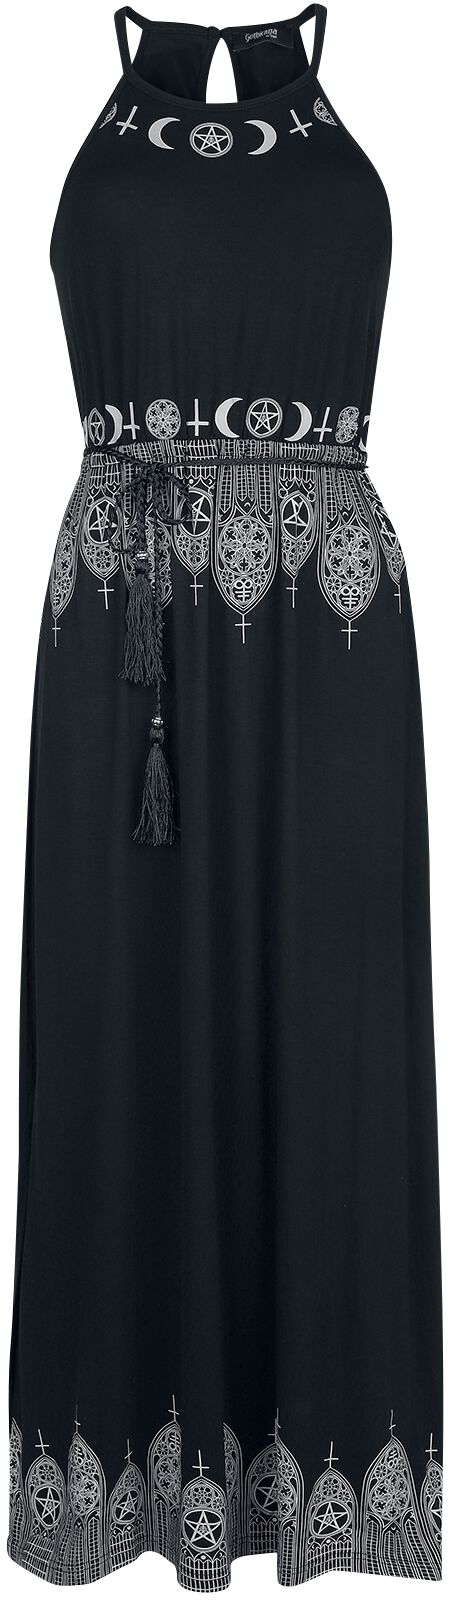 Gothicana by EMP Schwarzes Maxikleid mit Prints und schmalem Bindegürtel Langes Kleid schwarz in 3XL